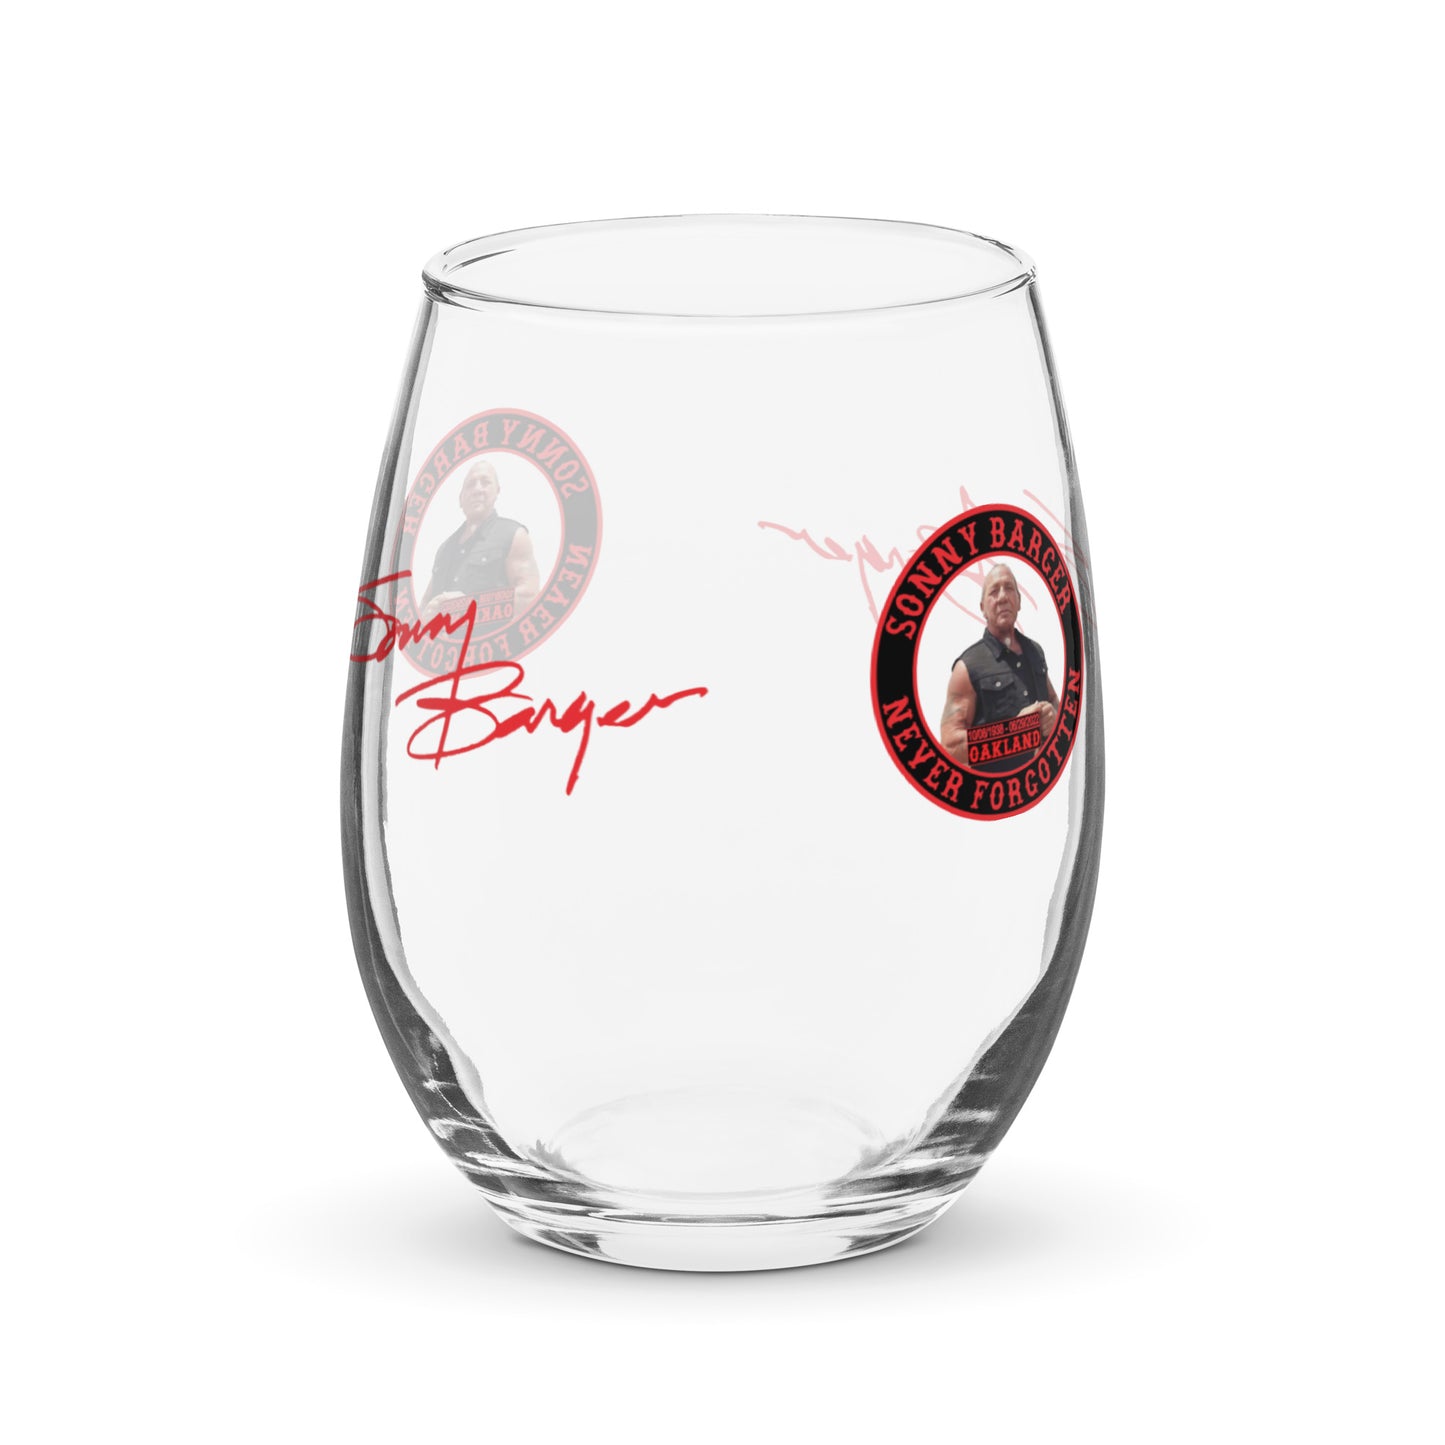 Sonny Barger Never Forgotten -Stemless wine glass